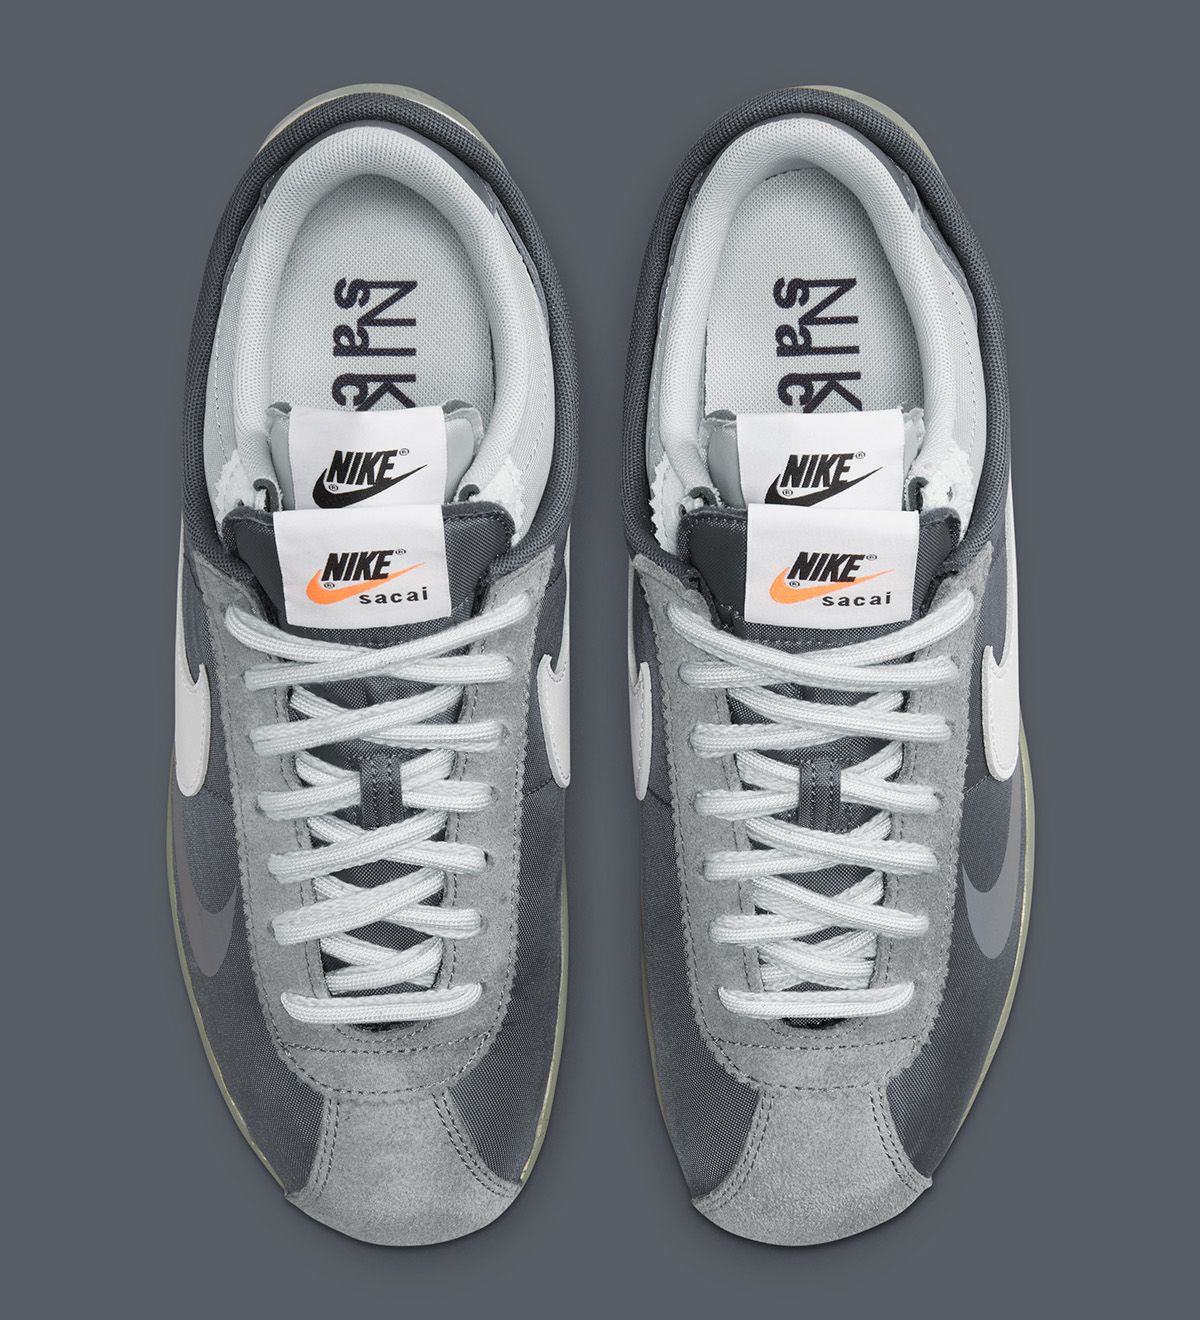 Where to Buy the sacai x Nike Cortez “Iron Grey” | House of